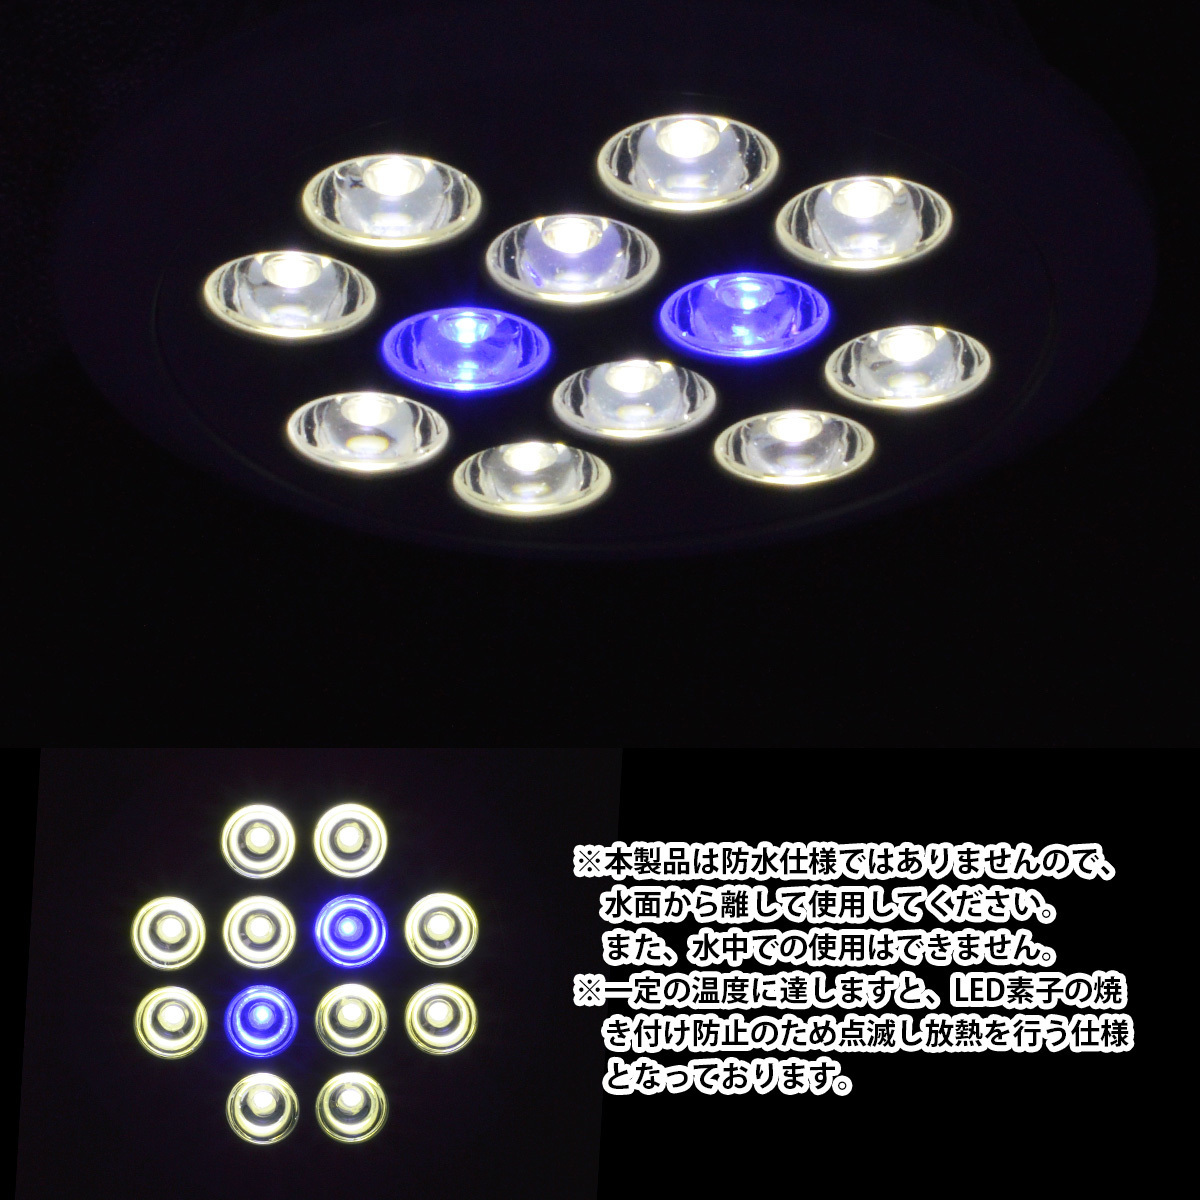 LED 電球 スポットライト 24W(2W×12)白10青2 水槽 照明 E26 LEDスポットライト 電気 水草 サンゴ 熱帯魚 観賞魚 植物育成_画像4